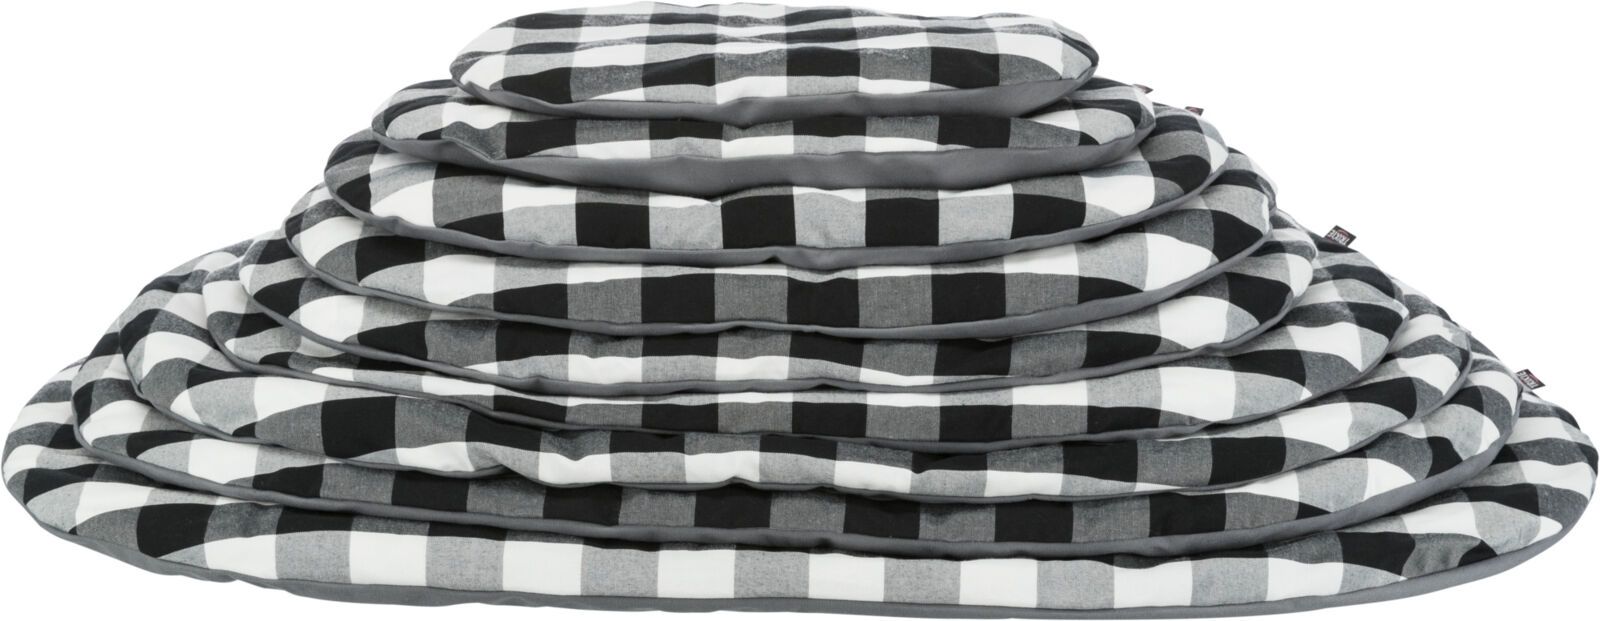 TRIXIE Kissen Scoopy, oval, 70 x 47 cm, schwarz / weiß / grau